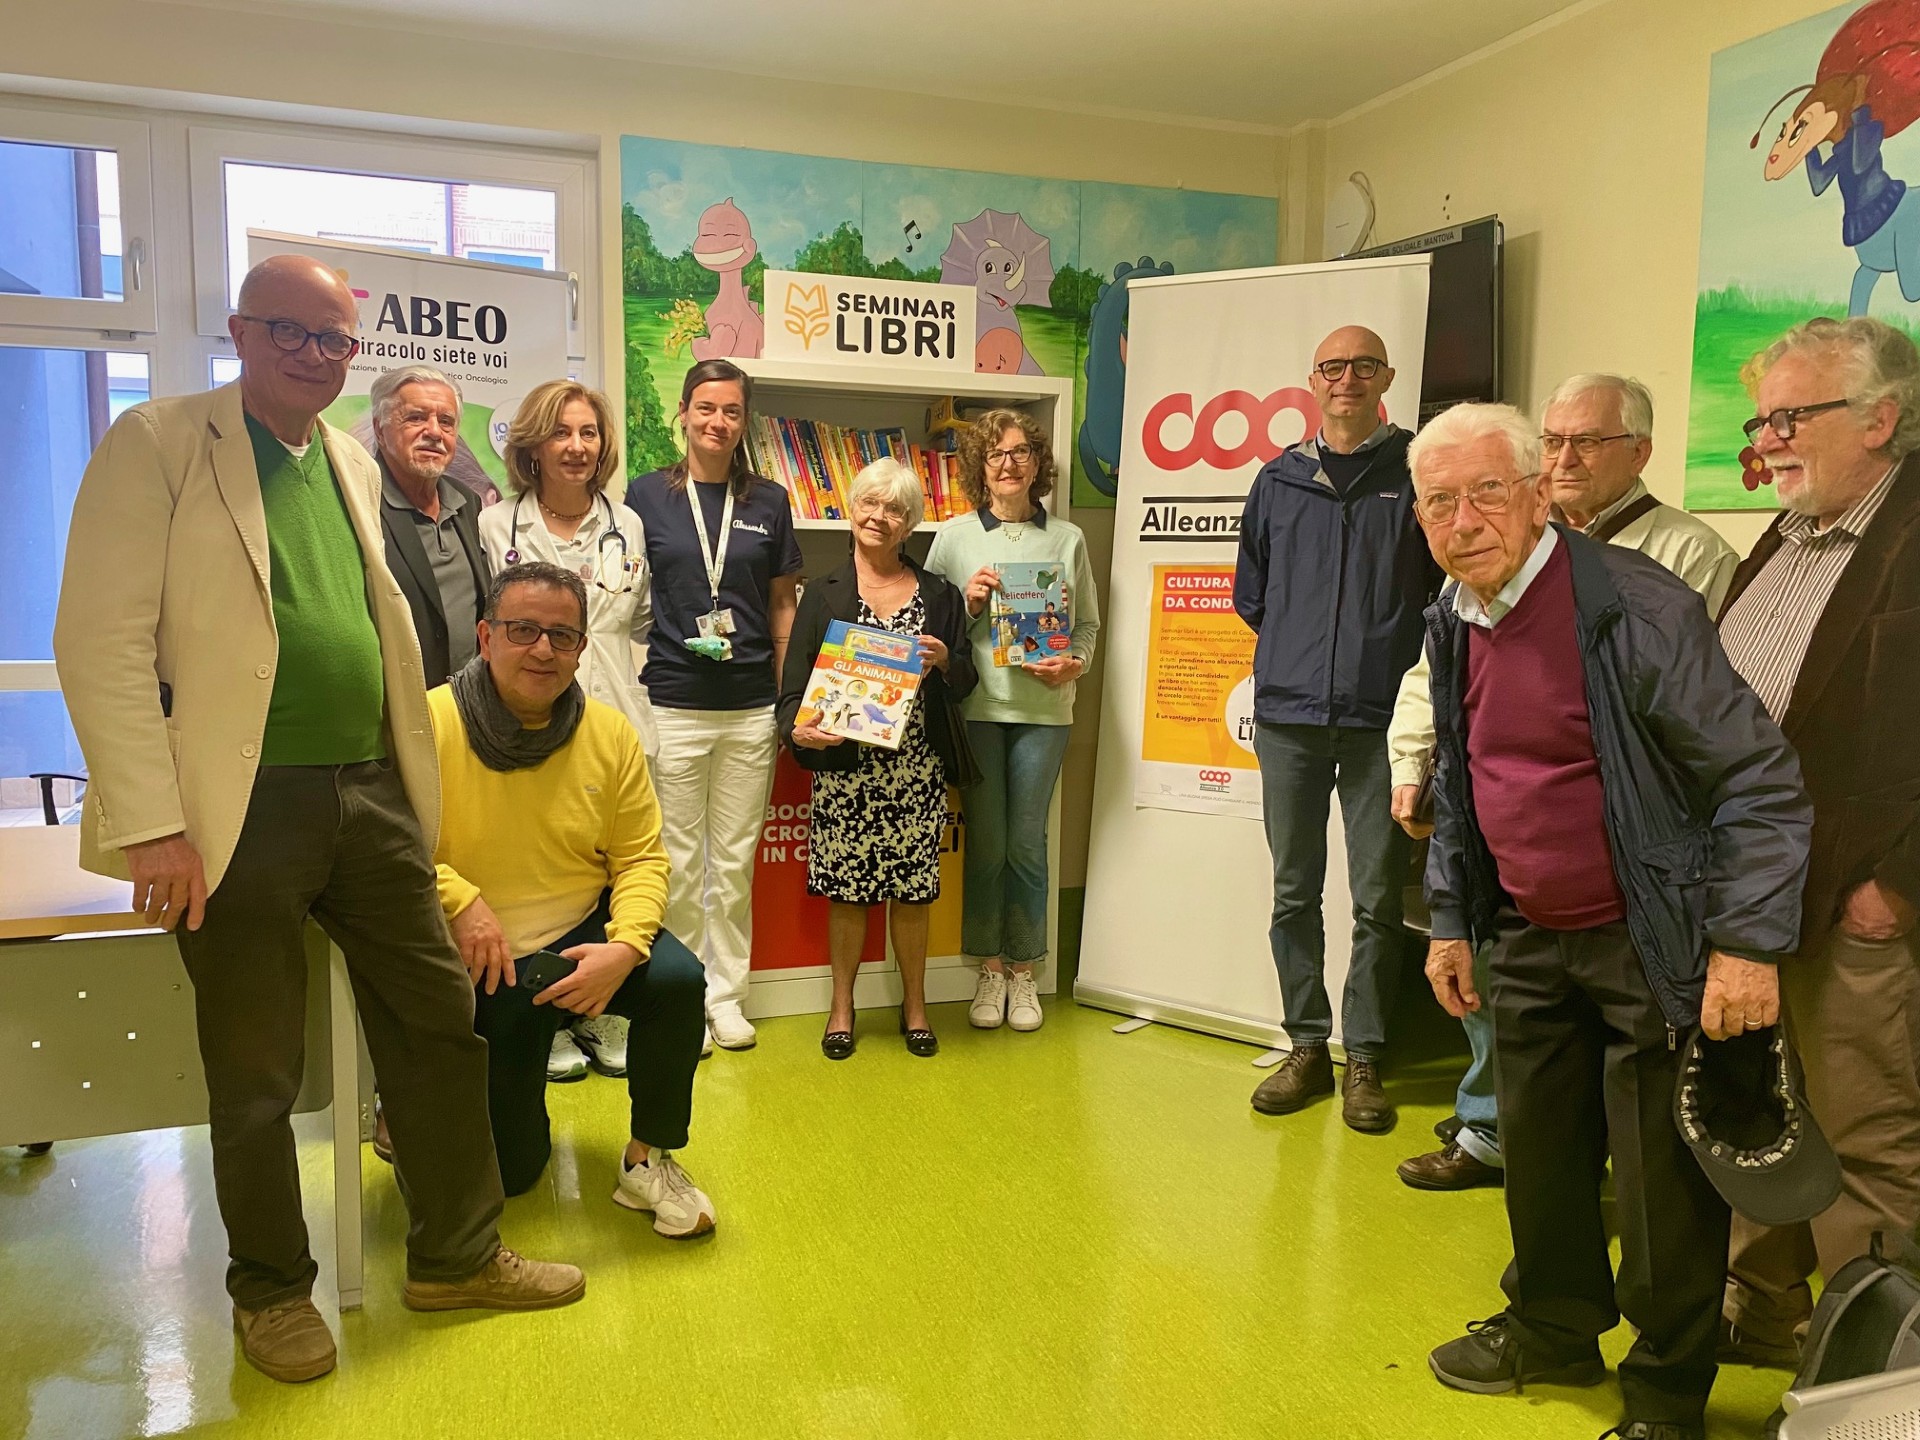 Seminar Libri arriva negli spazi ospedalieri di Mantova con Coop Alleanza 3.0 e Abeo Mantova